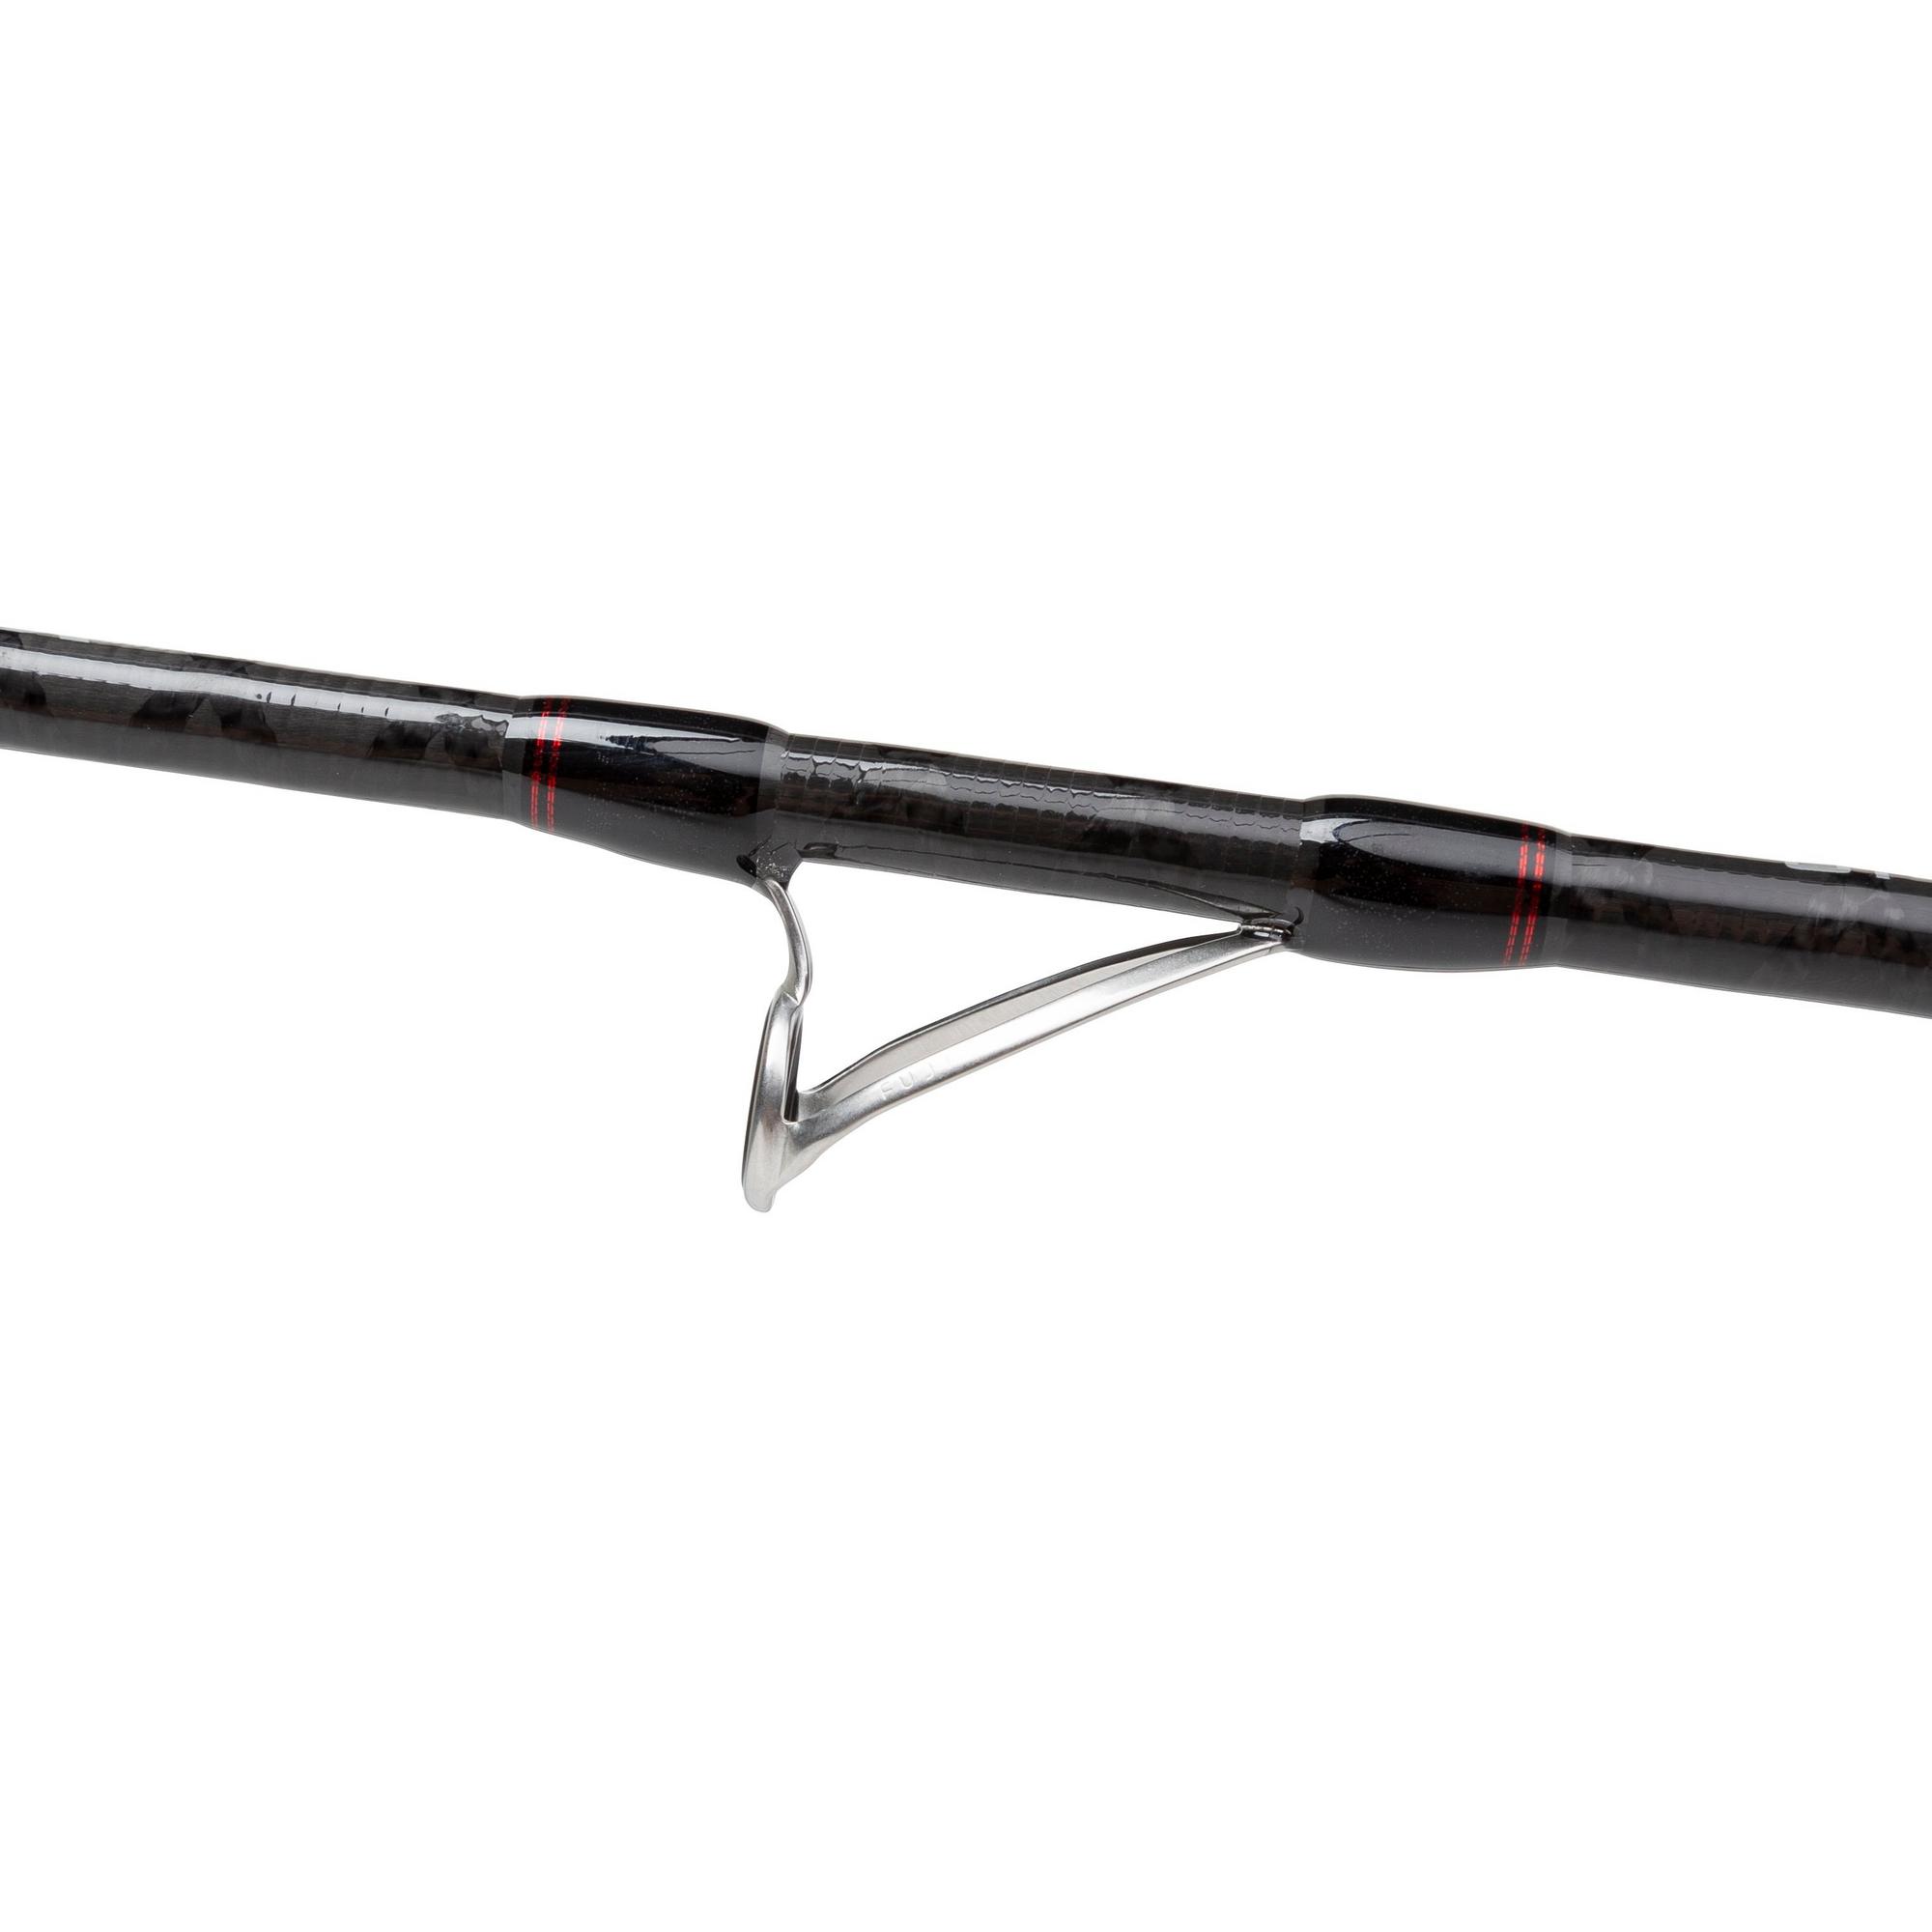 Penn Conflict Tuna Broumé Stalking Rod 1.83m (100lb)